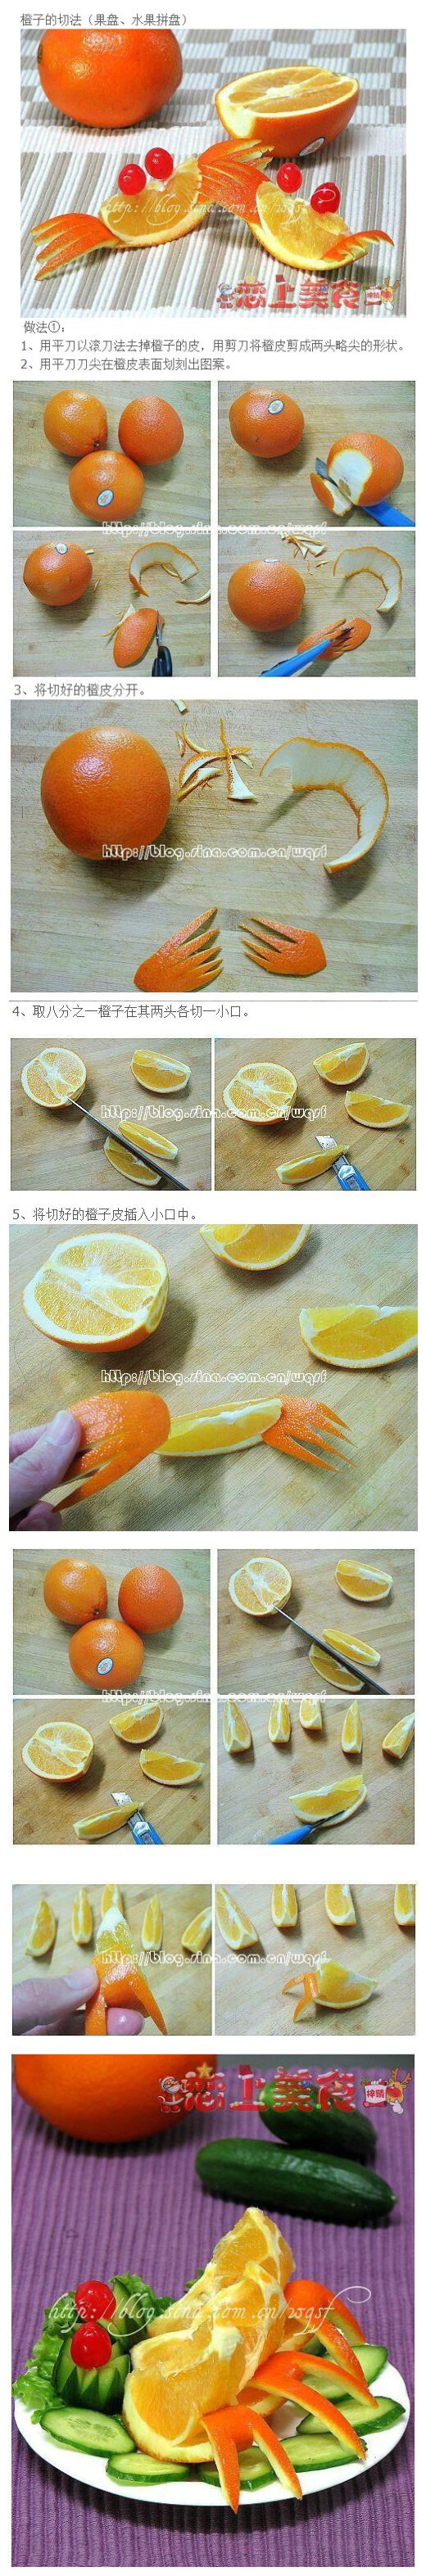 水果拼盘橙子的切法